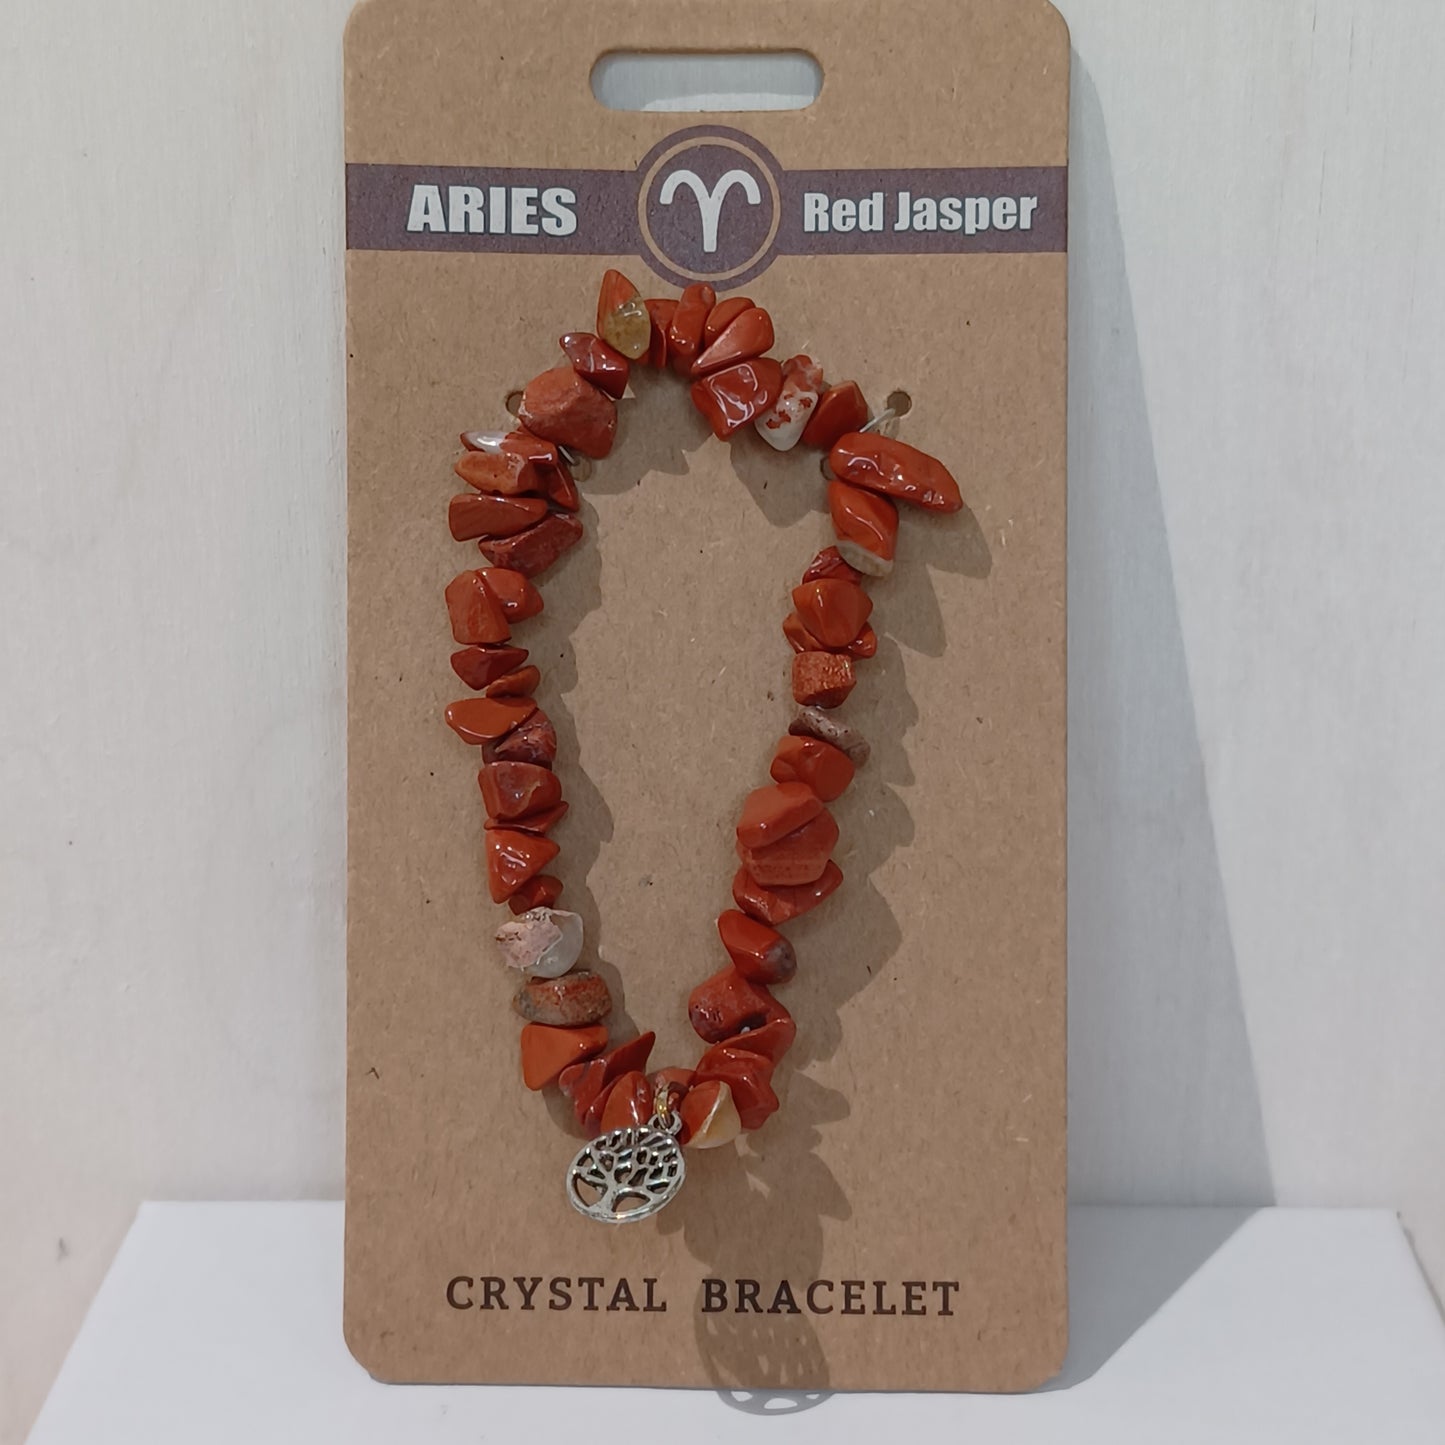 Crystal Bracelet - Aries Red Jasper